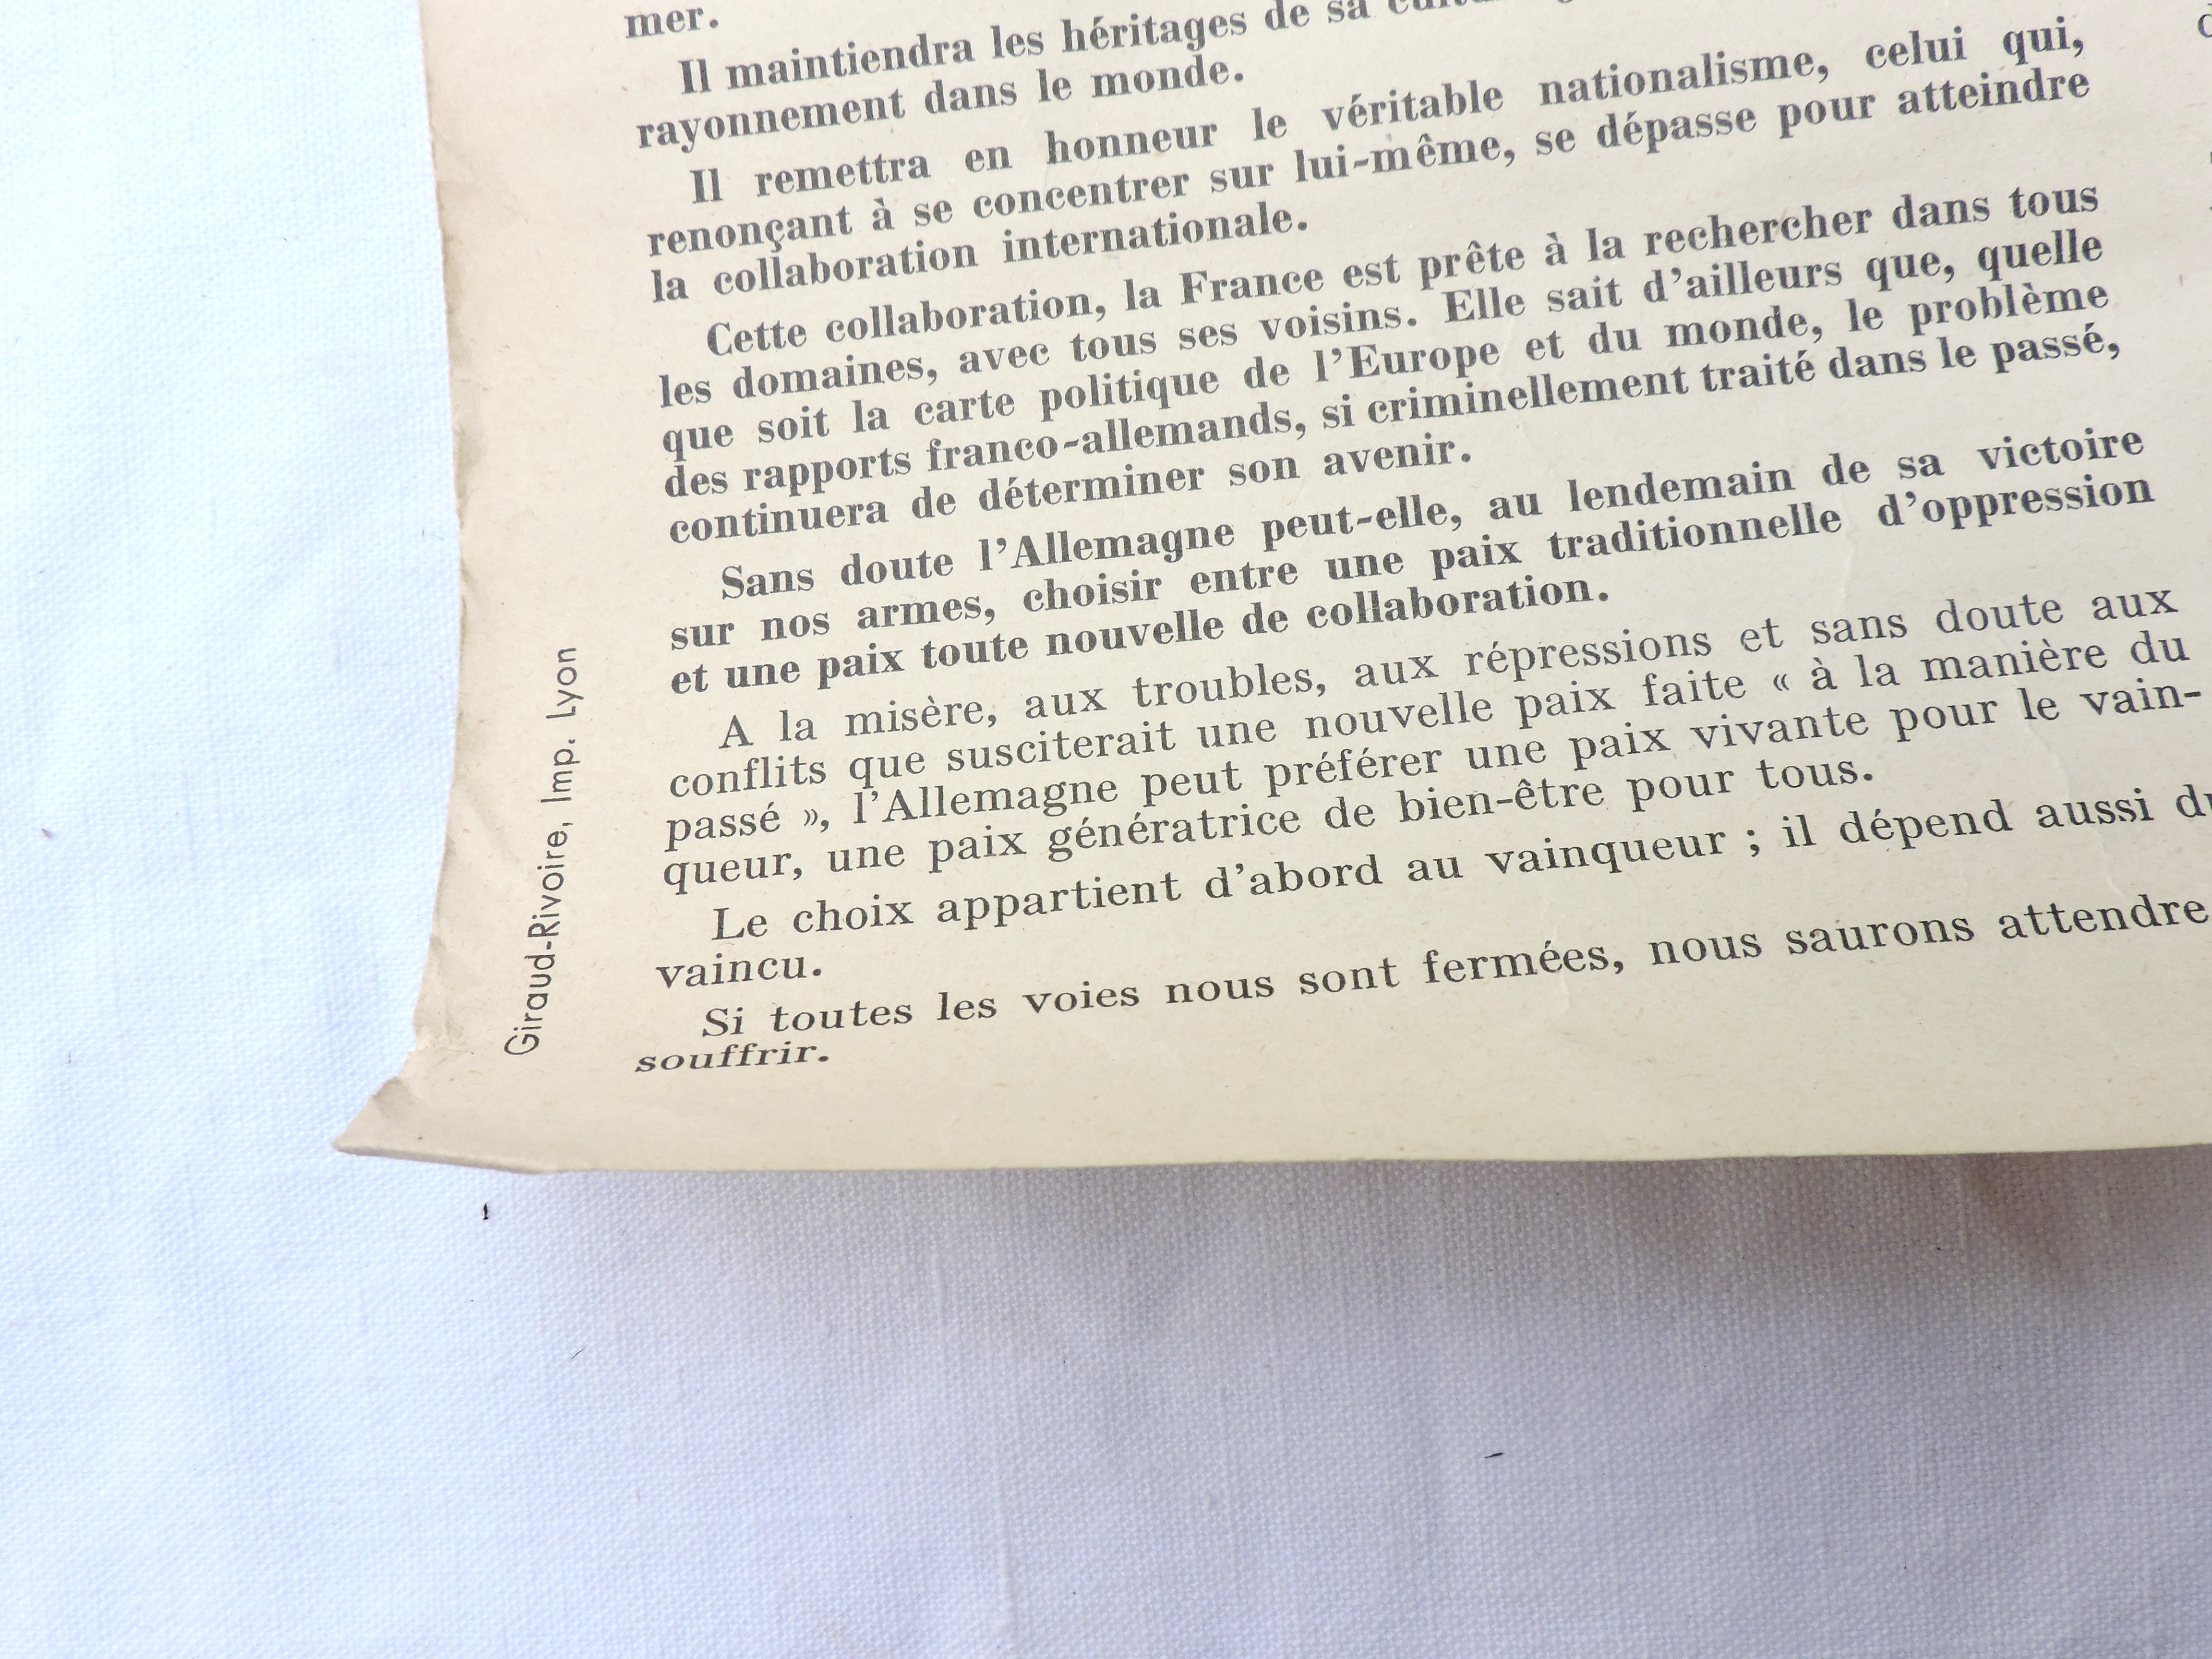 Affiche du discours du Mar&eacute;chal P&eacute;tain 11 Octobre 1940